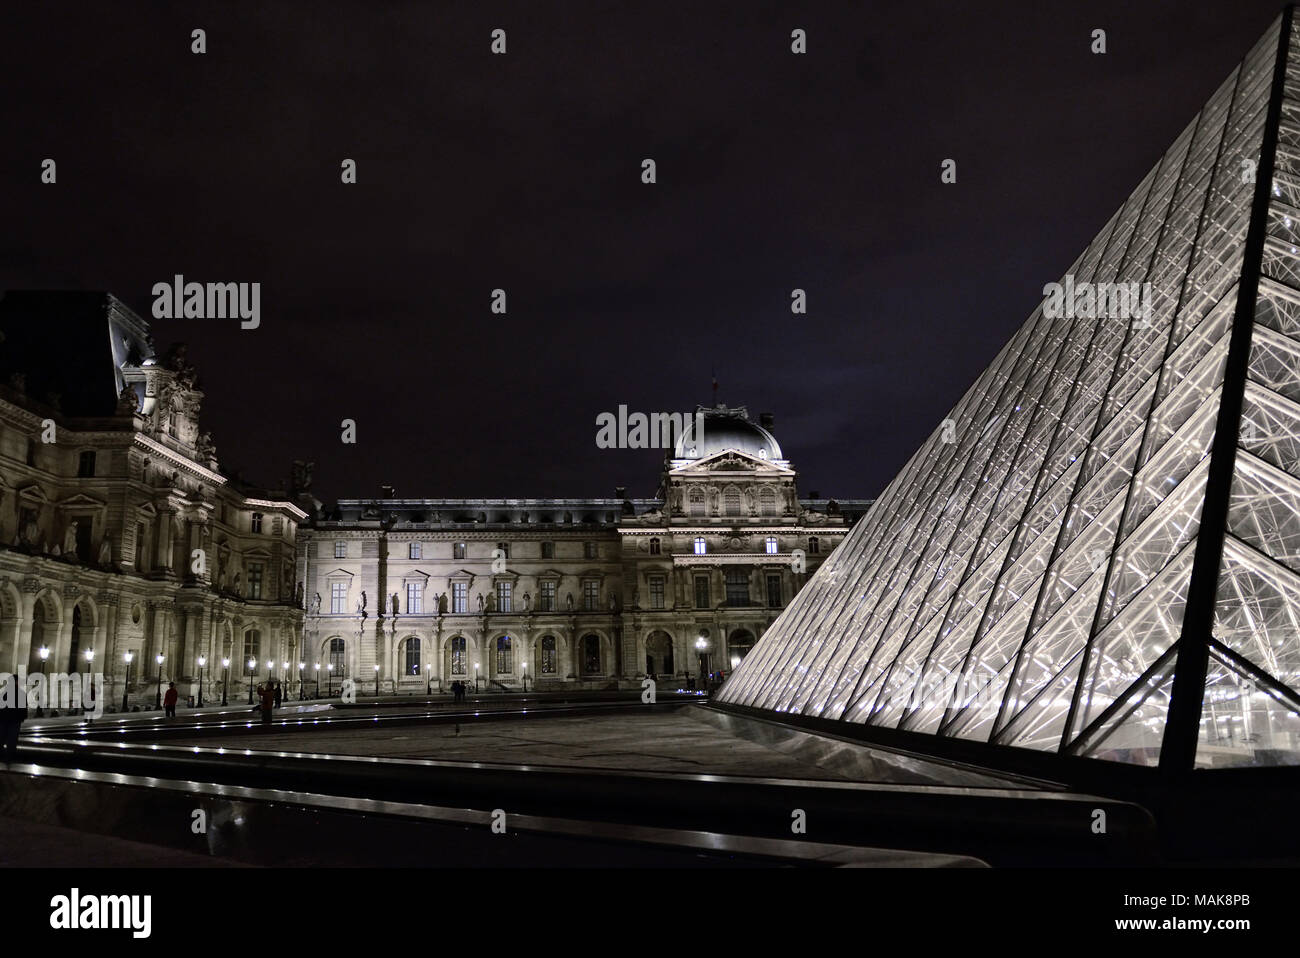 La pyramide de verre du Louvre et du Palais Royal, dans l'éclairage de nuit Banque D'Images